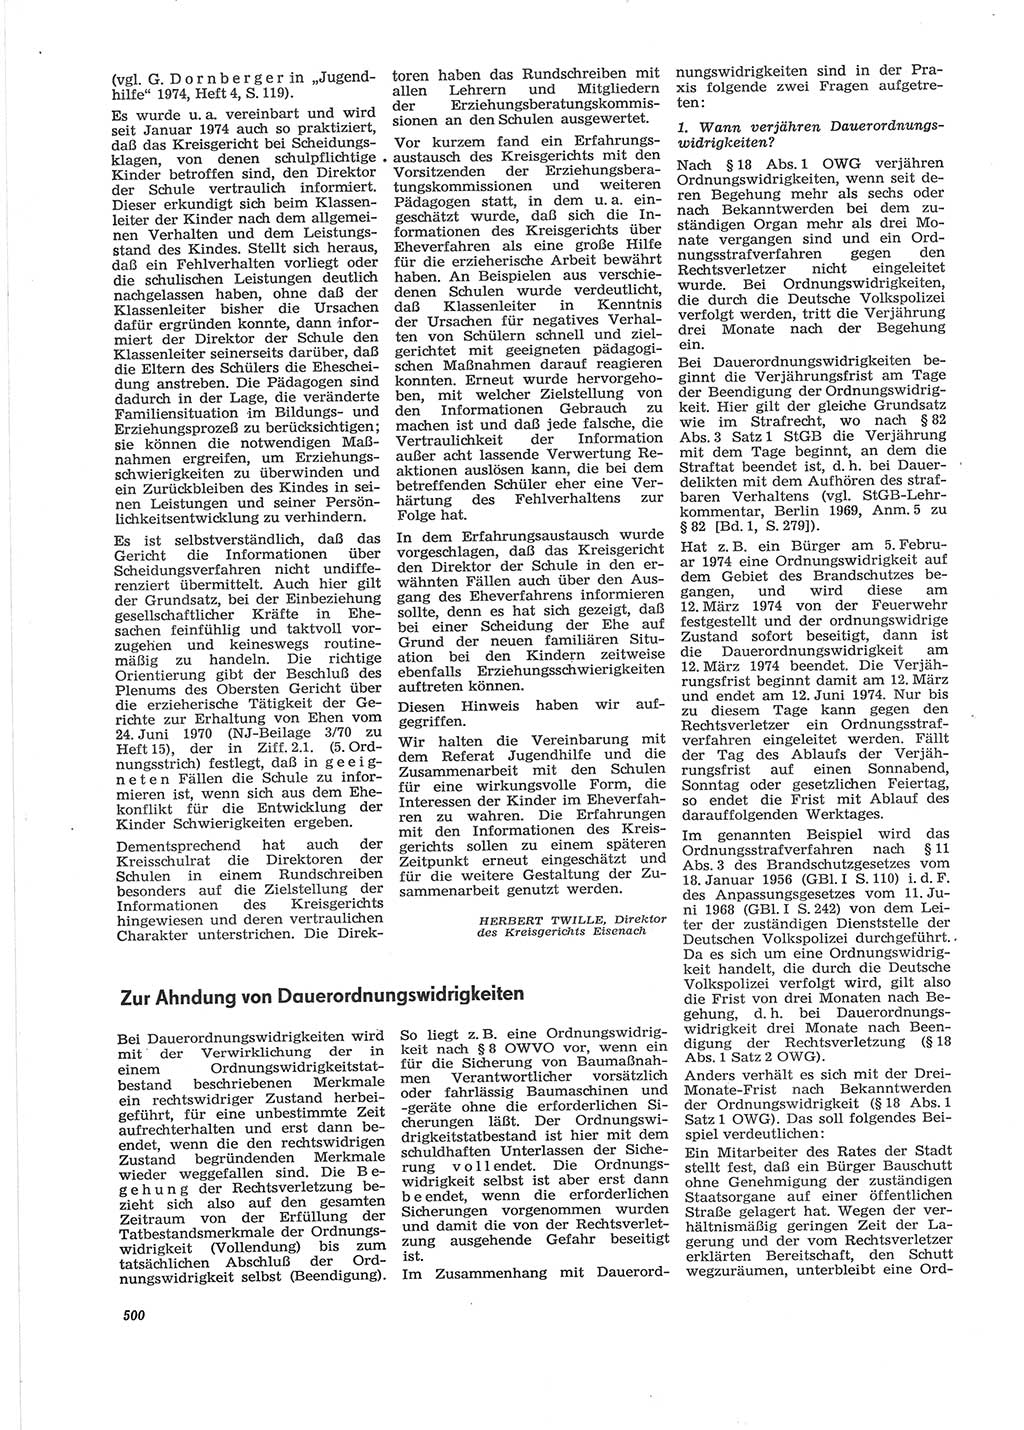 Neue Justiz (NJ), Zeitschrift für Recht und Rechtswissenschaft [Deutsche Demokratische Republik (DDR)], 28. Jahrgang 1974, Seite 500 (NJ DDR 1974, S. 500)